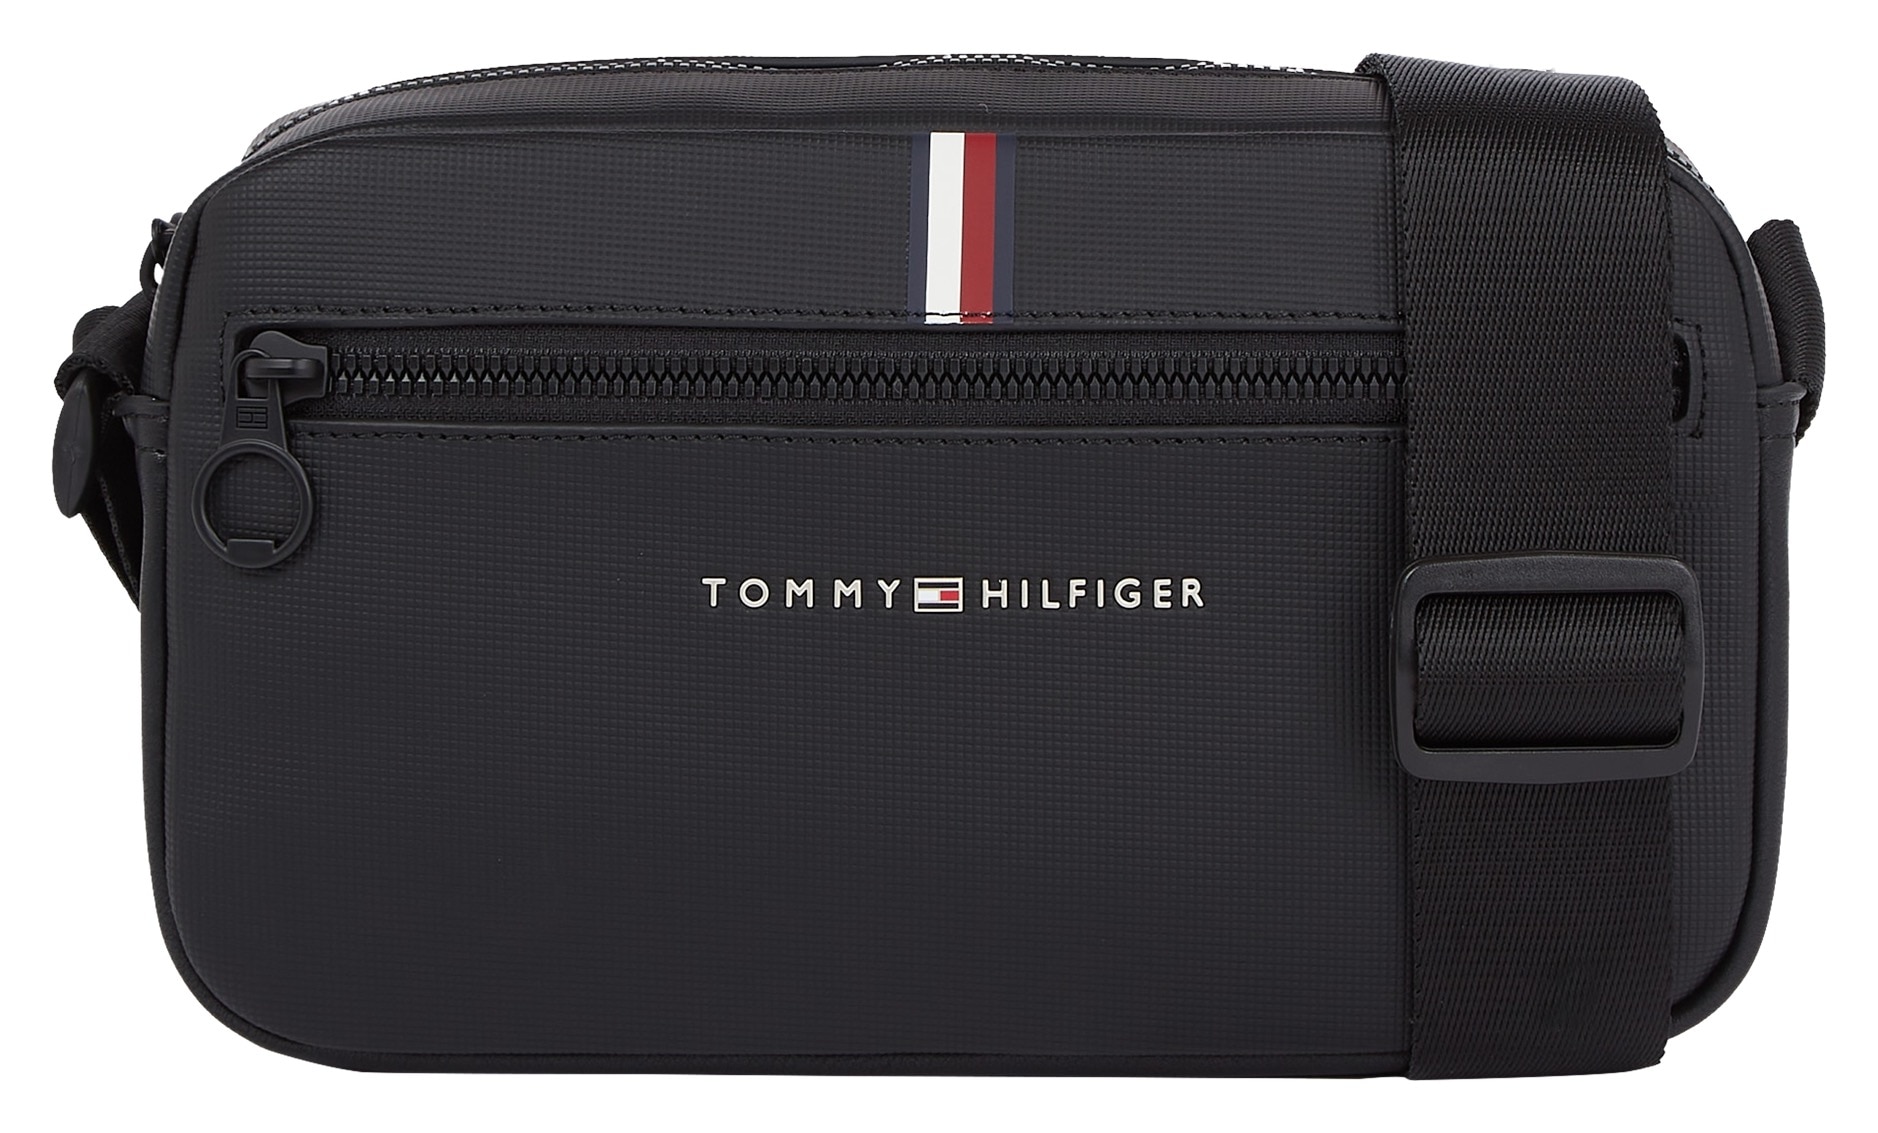 Tommy Hilfiger »TH OTTO Streifendetail PIQUE Mini ESSENTIAL Bag mit EW shoppen online bei REPORTER«, charakteristischem